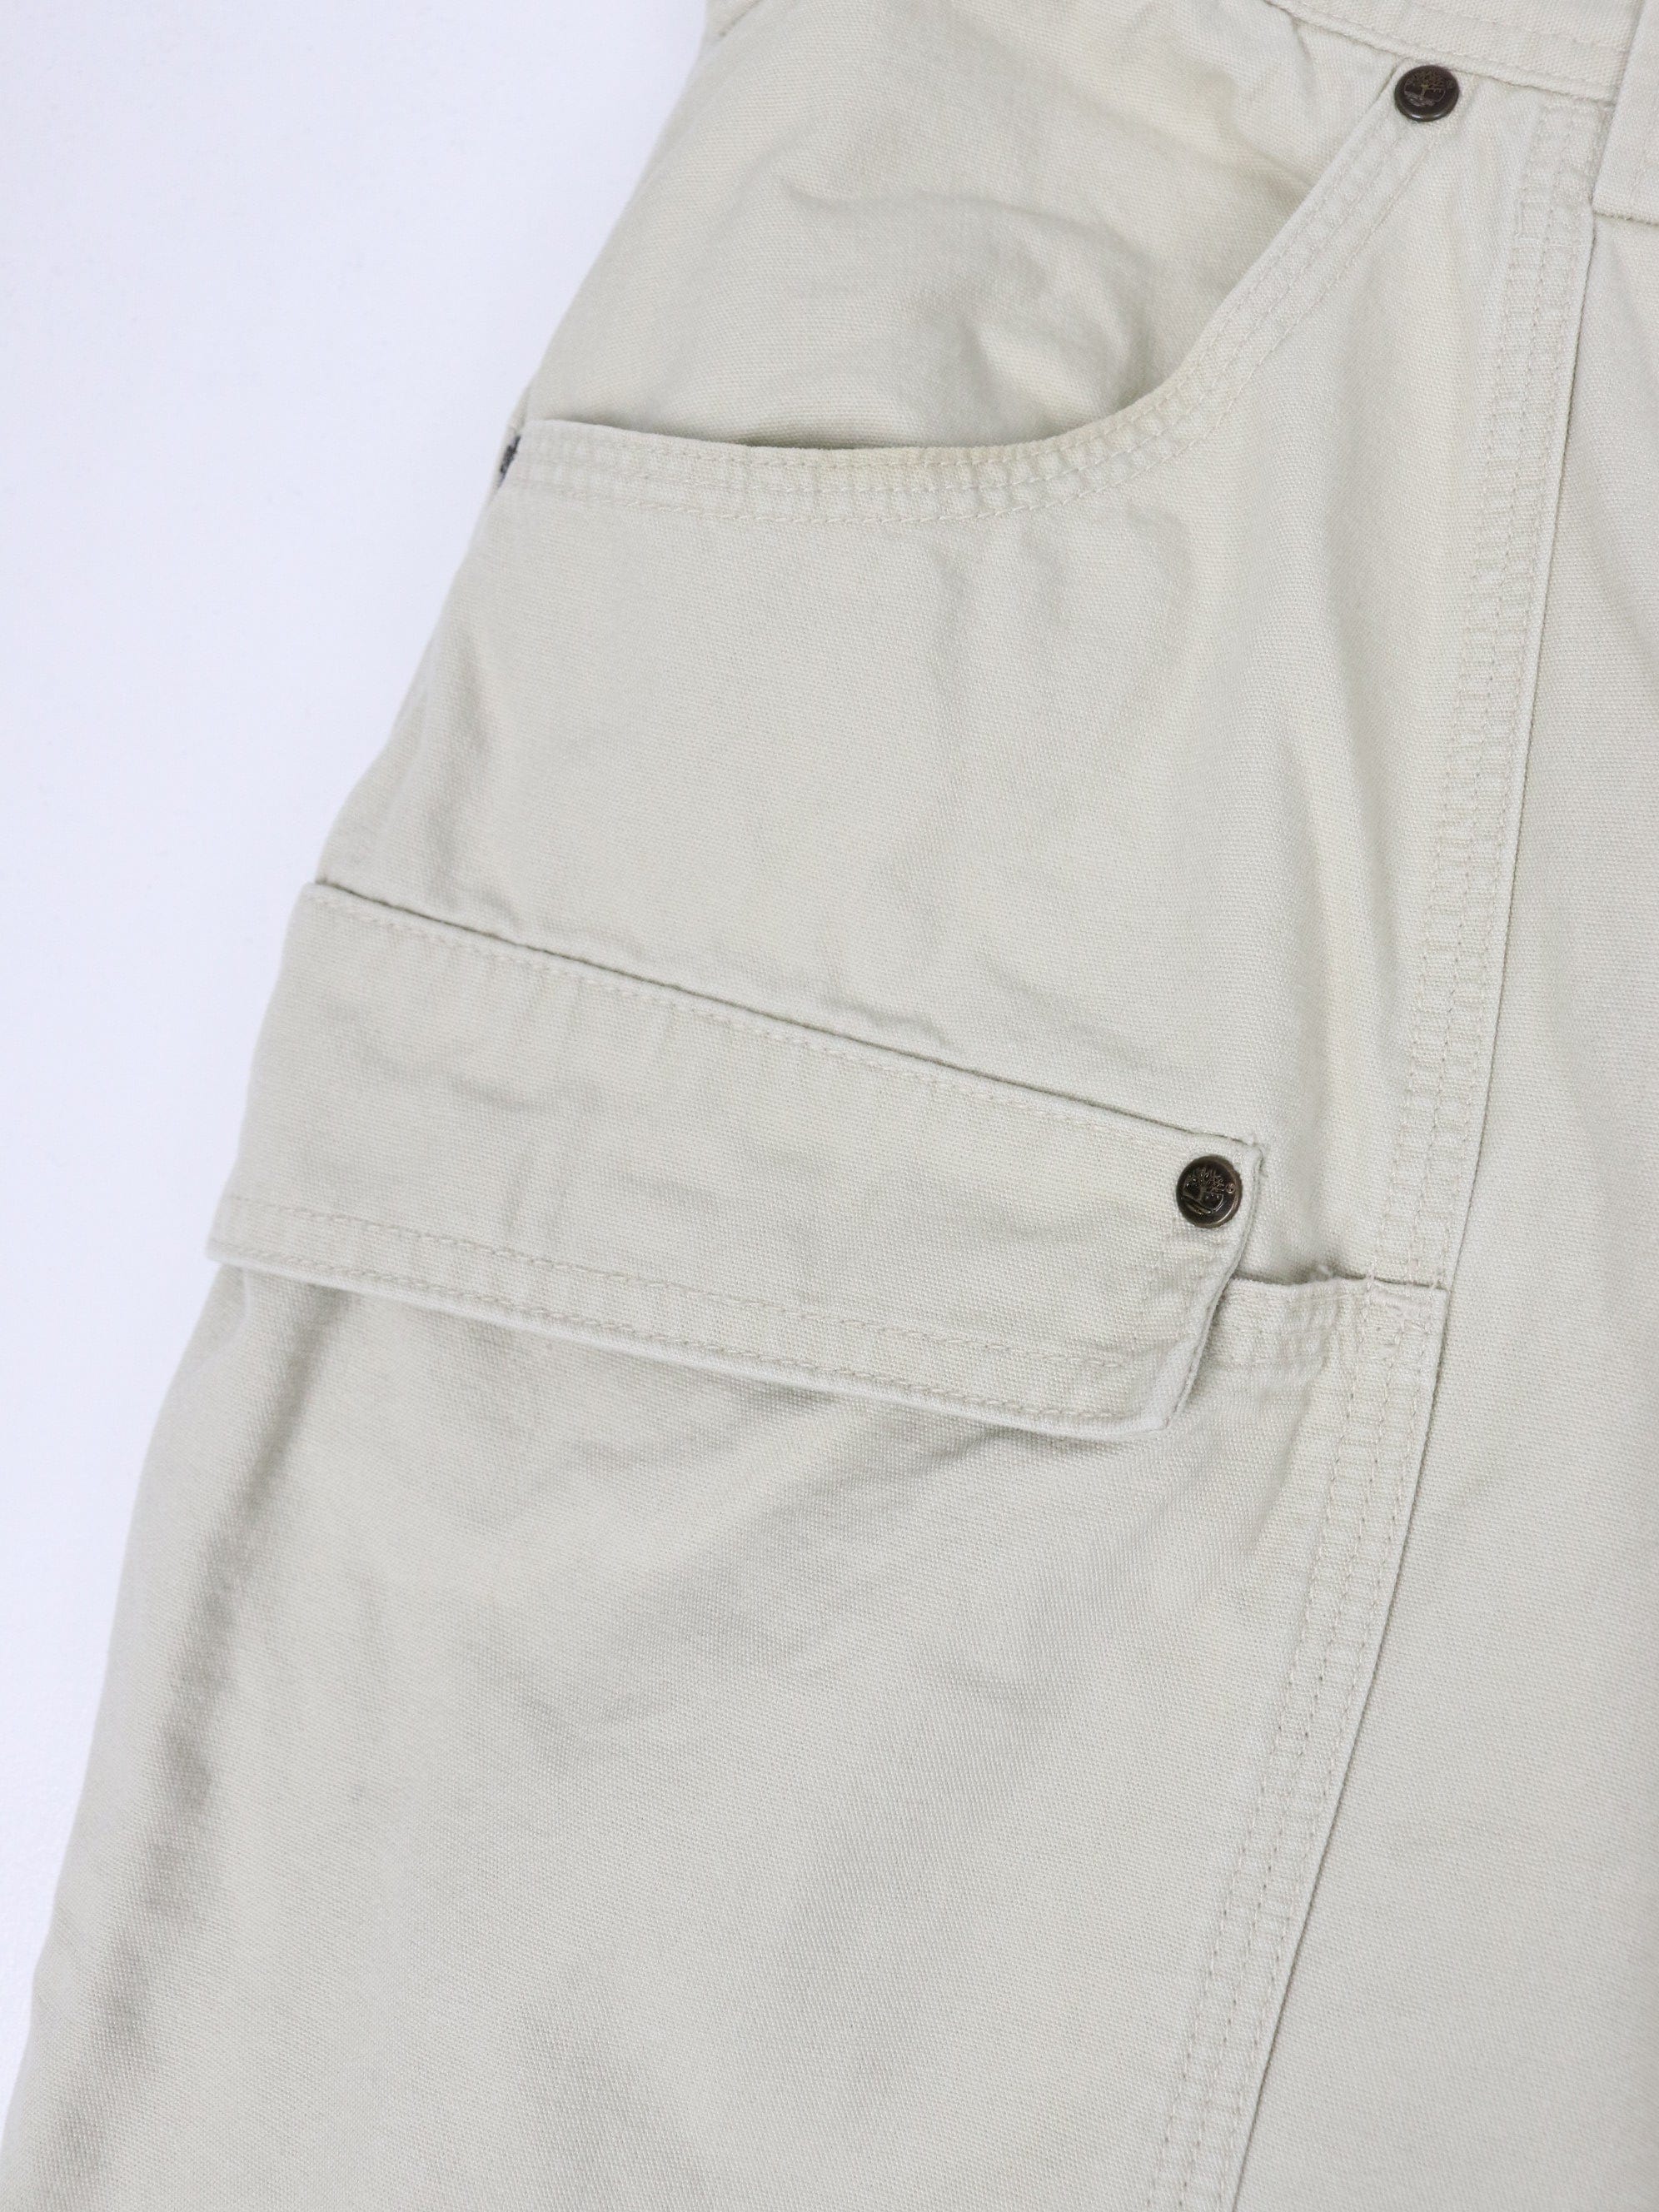 Timberland DWR Convertible Pants - Men's